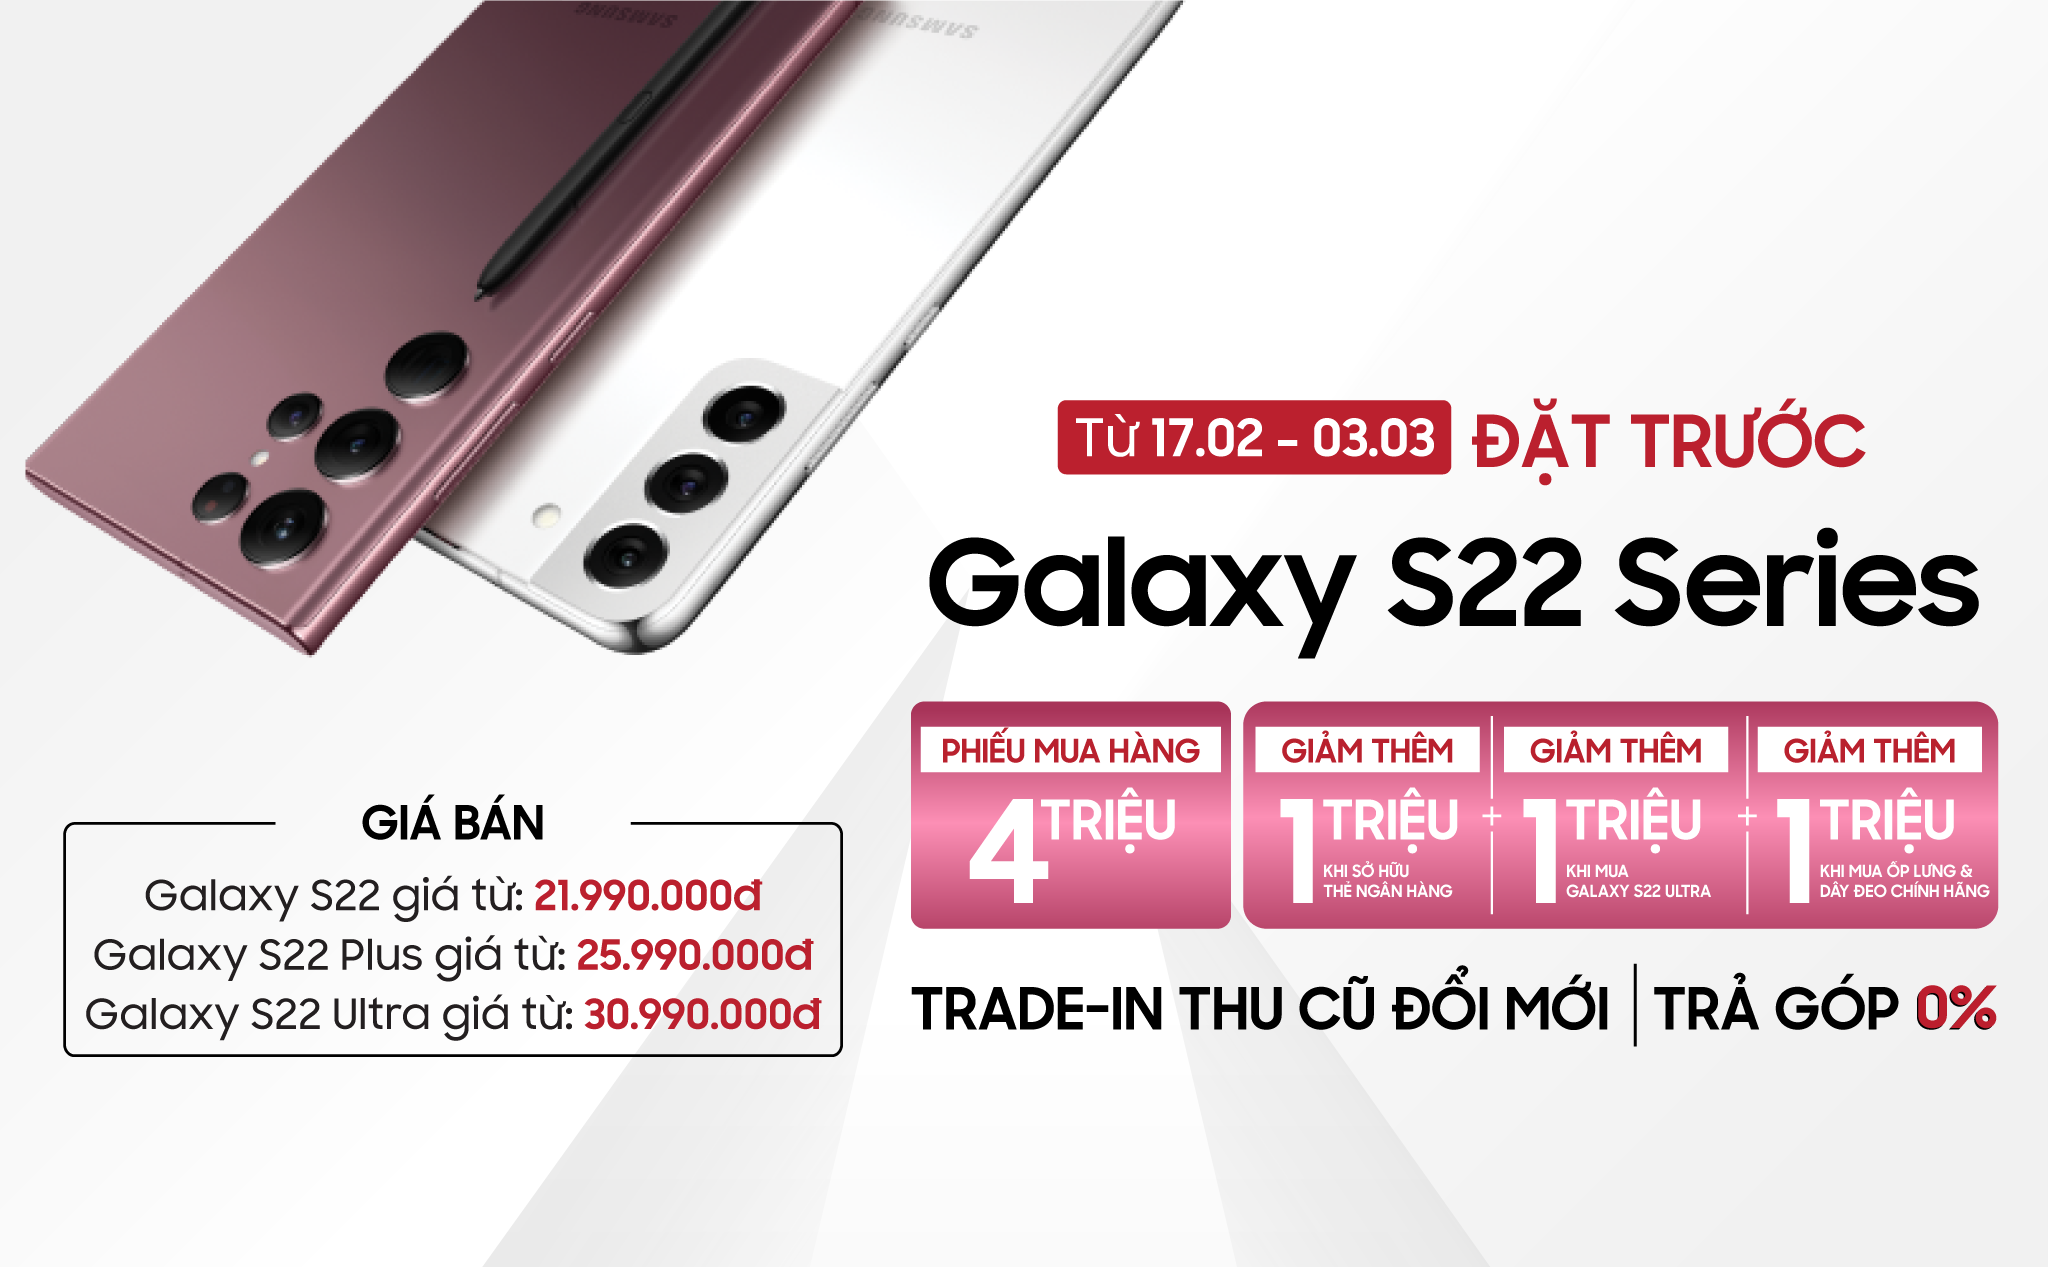 Galaxy S22 series ra mắt tại Việt Nam: Chip Snapdragon 8 Gen 1, giá từ 21.99 triệu đồng, đặt trước nhận quà đến 6 triệu đồng